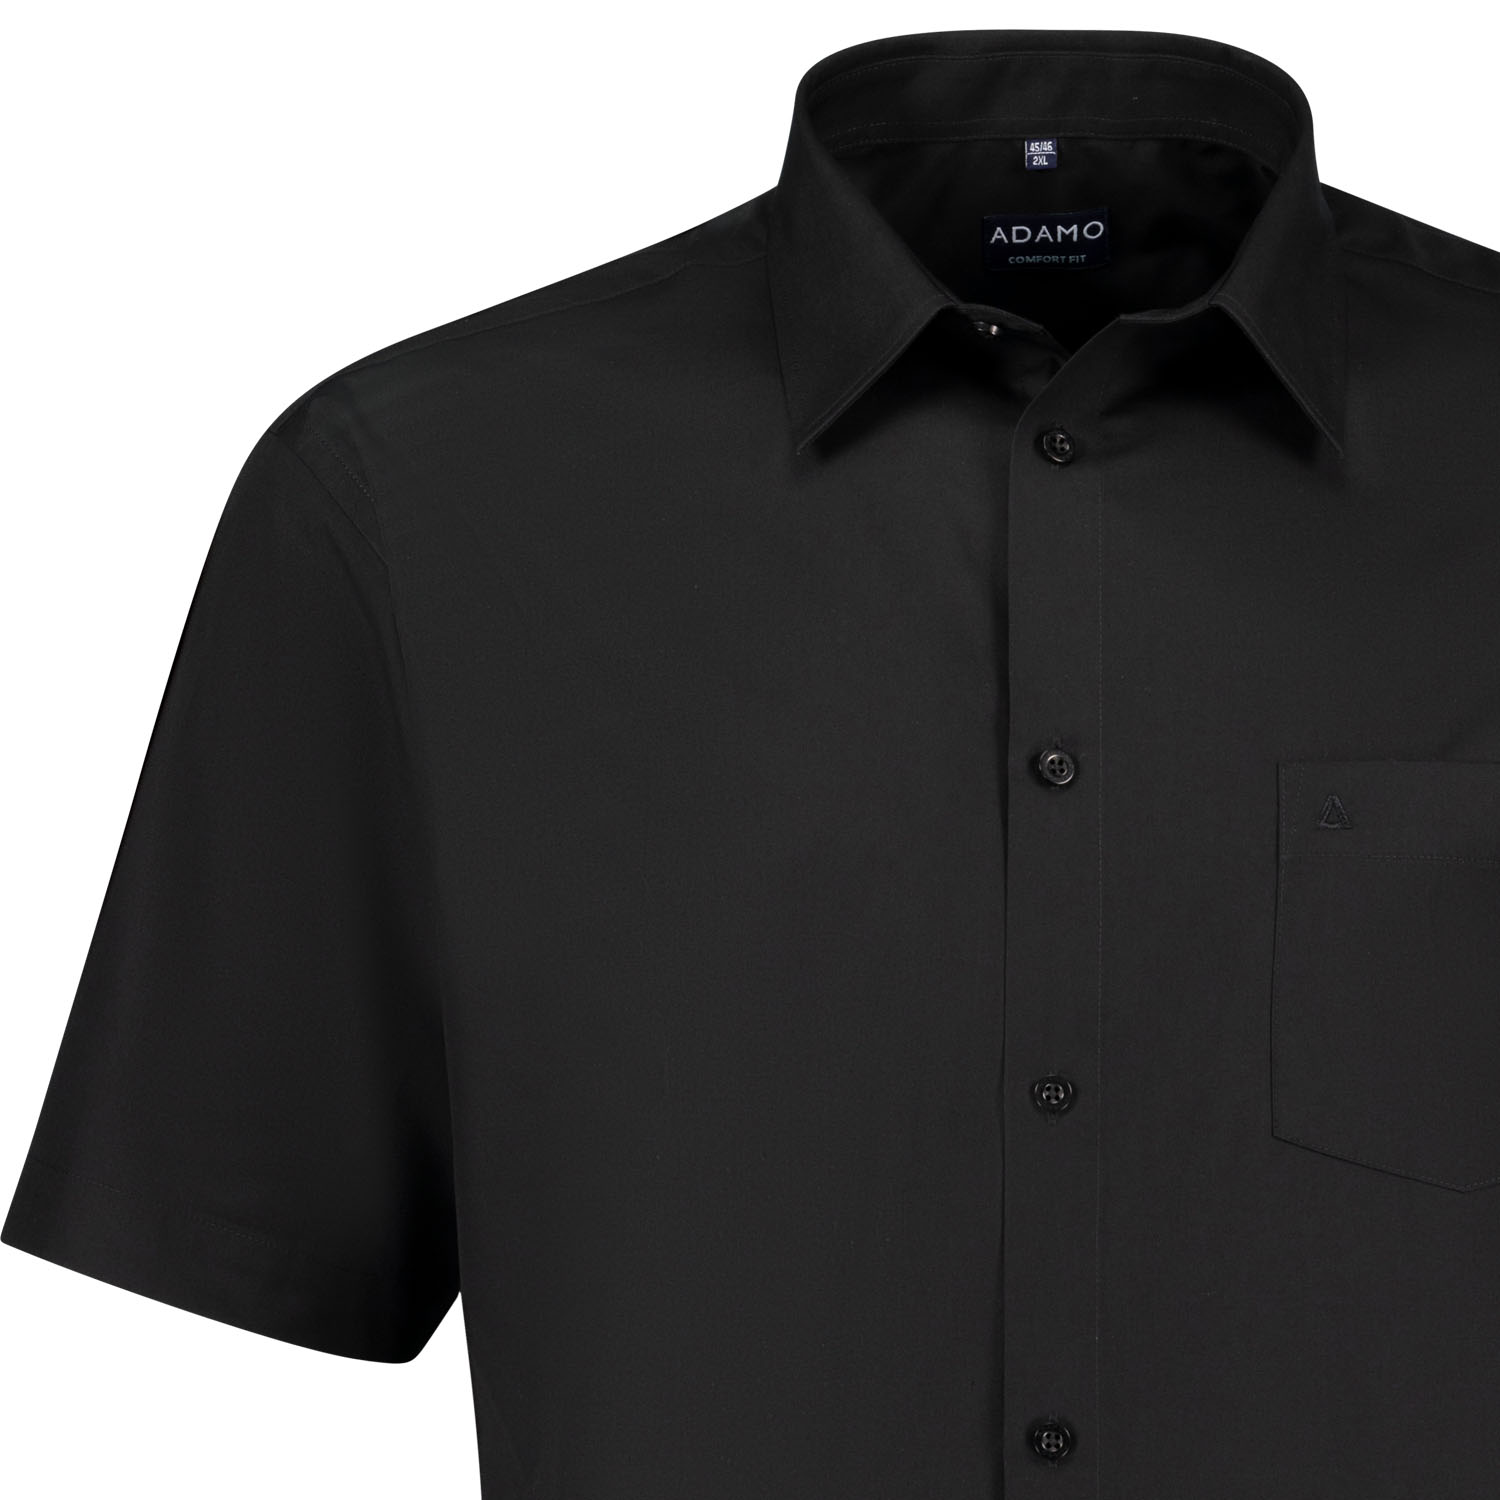 ADAMO Kurzarm Businesshemd schwarz COMFORT FIT Serie "Warren" in großen Größen von 2XL bis 10XL